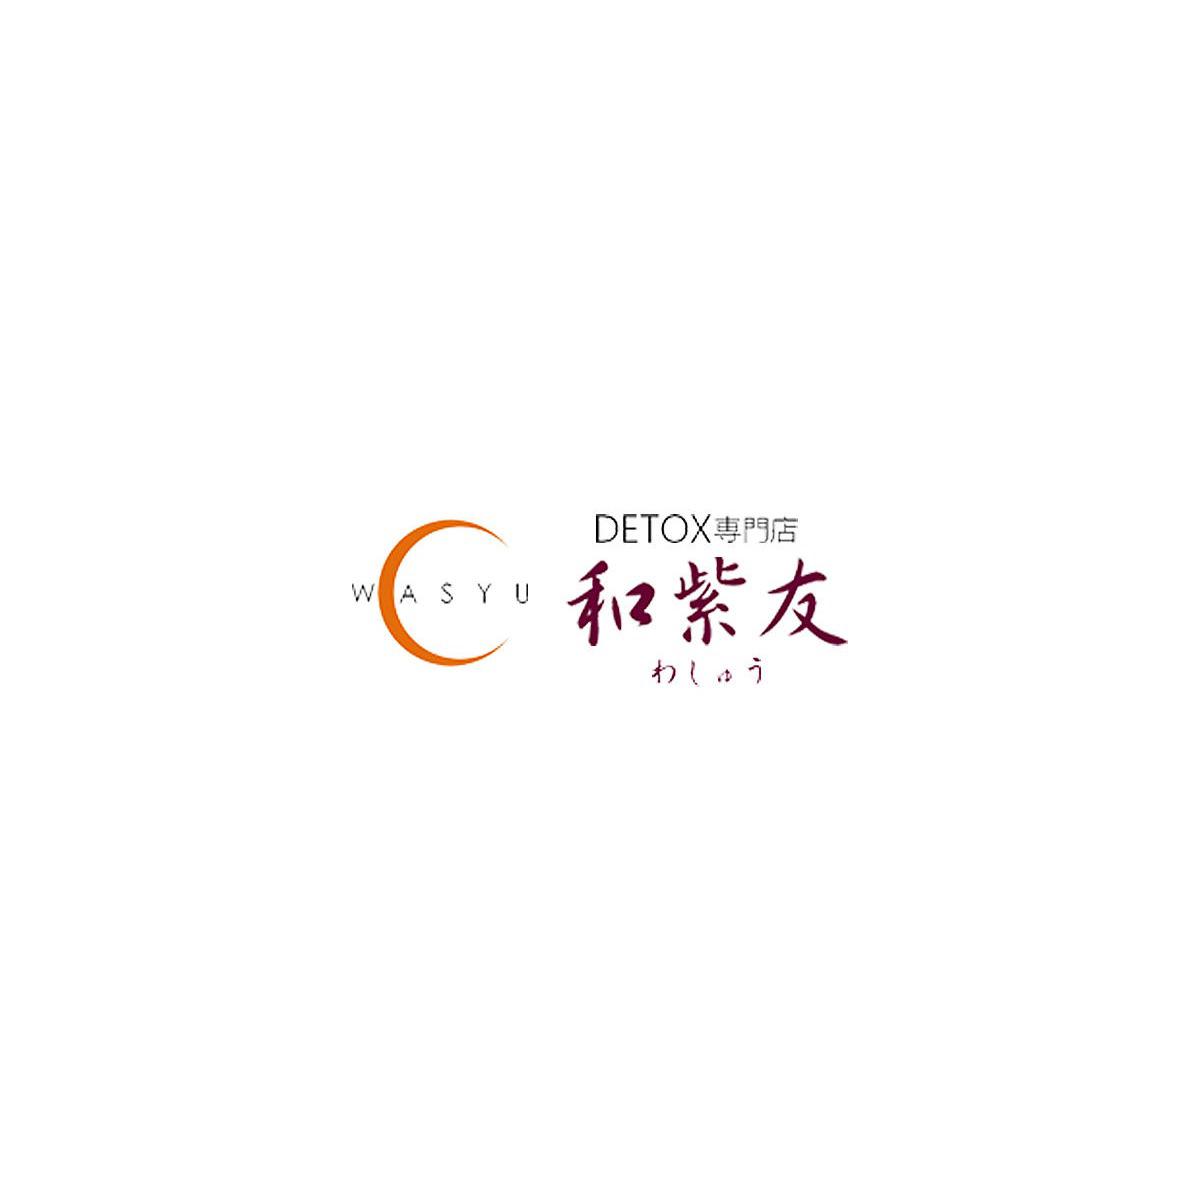 デトックス専門店和紫友(わしゅう) Logo